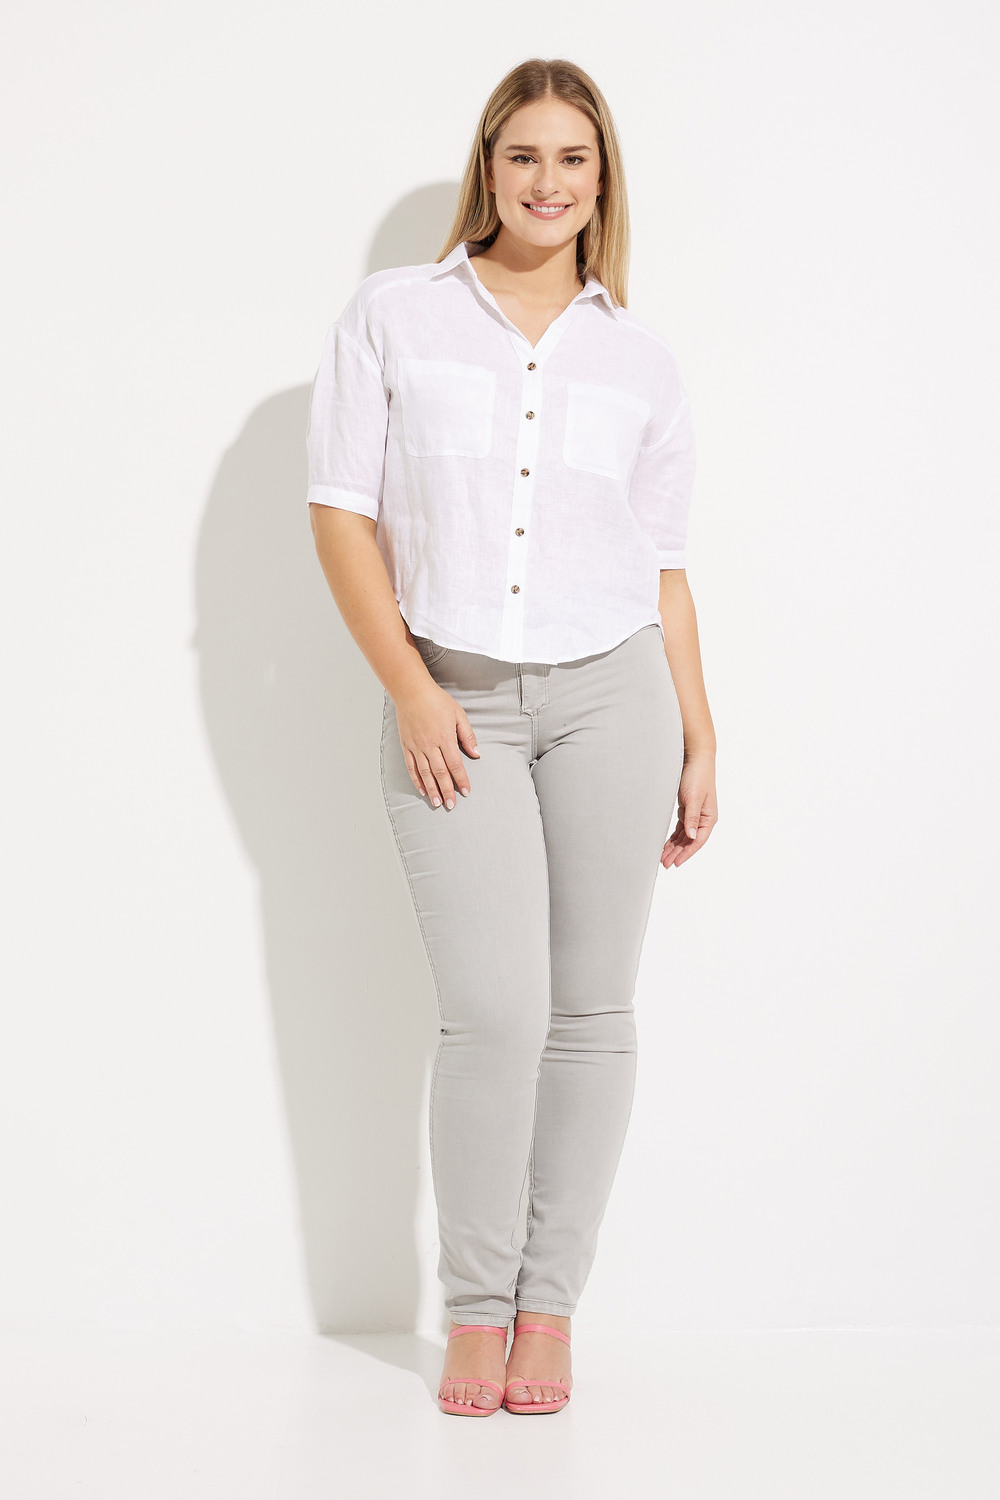 Short Sleeve Blouse Style C4486. White